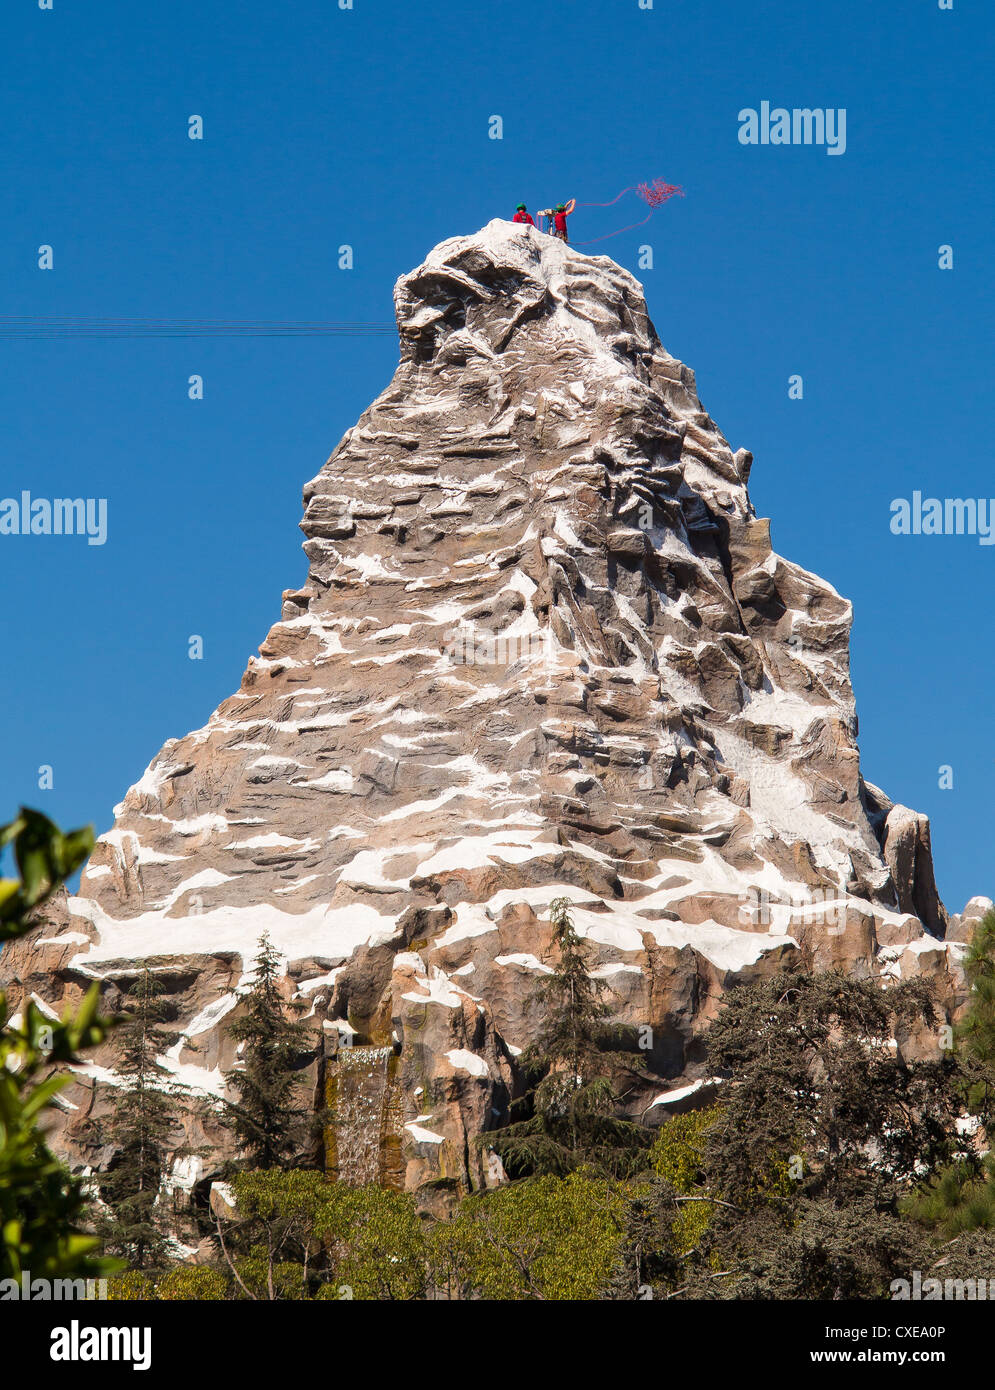 ANAHEIM, Kalifornien, USA - das Matterhorn-Attraktion im Disneyland Freizeitpark Stockfoto